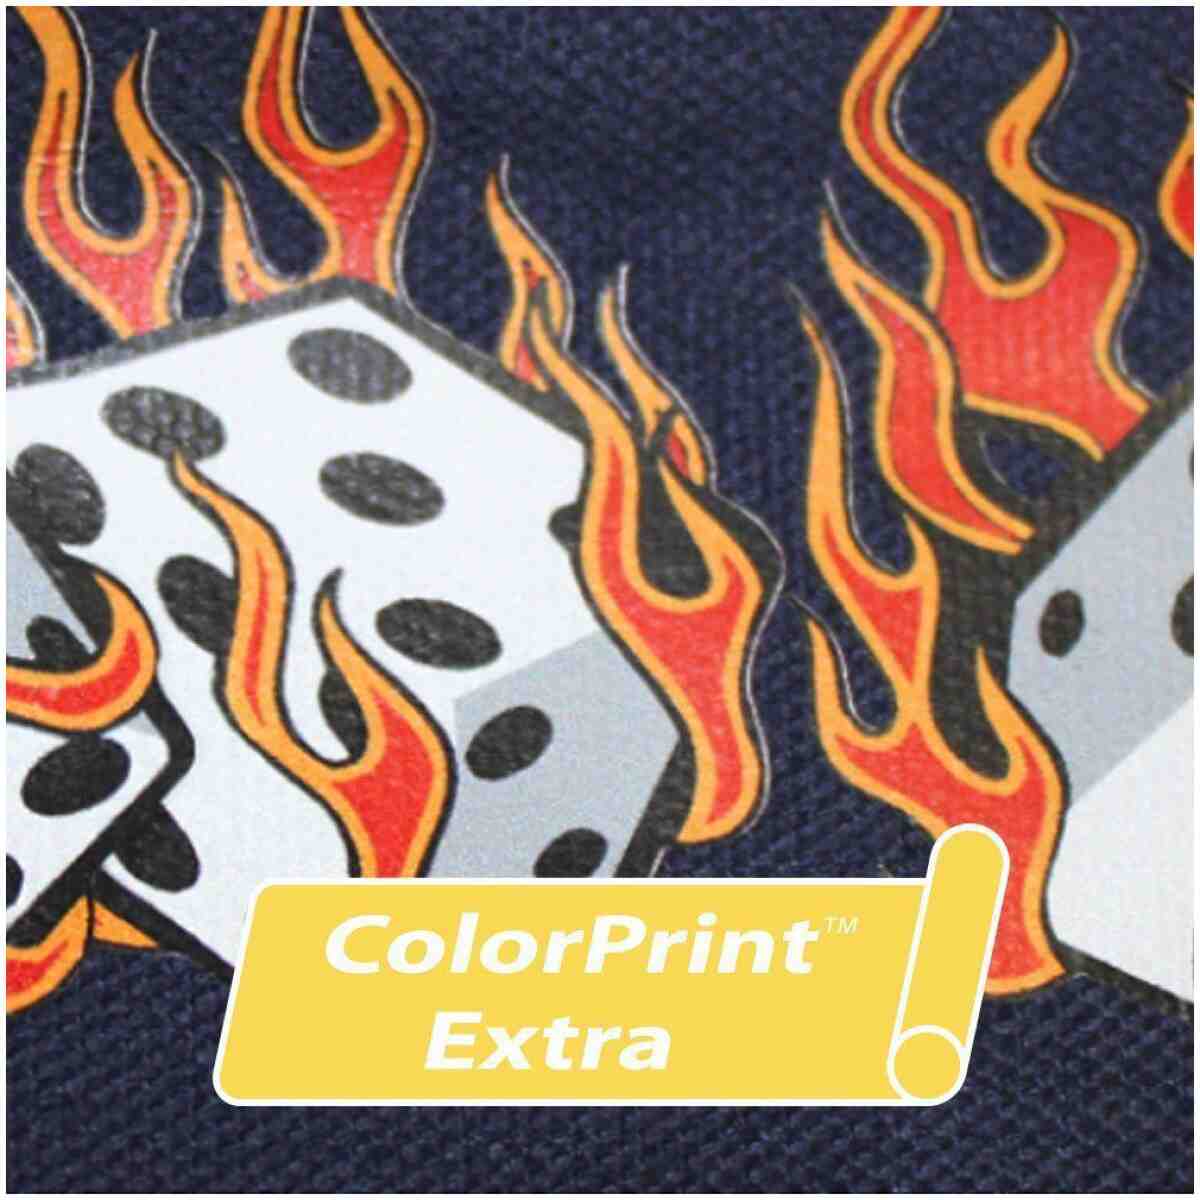 Siser® Colorprint™ Extra 29.5" (For Nylon) SISER®